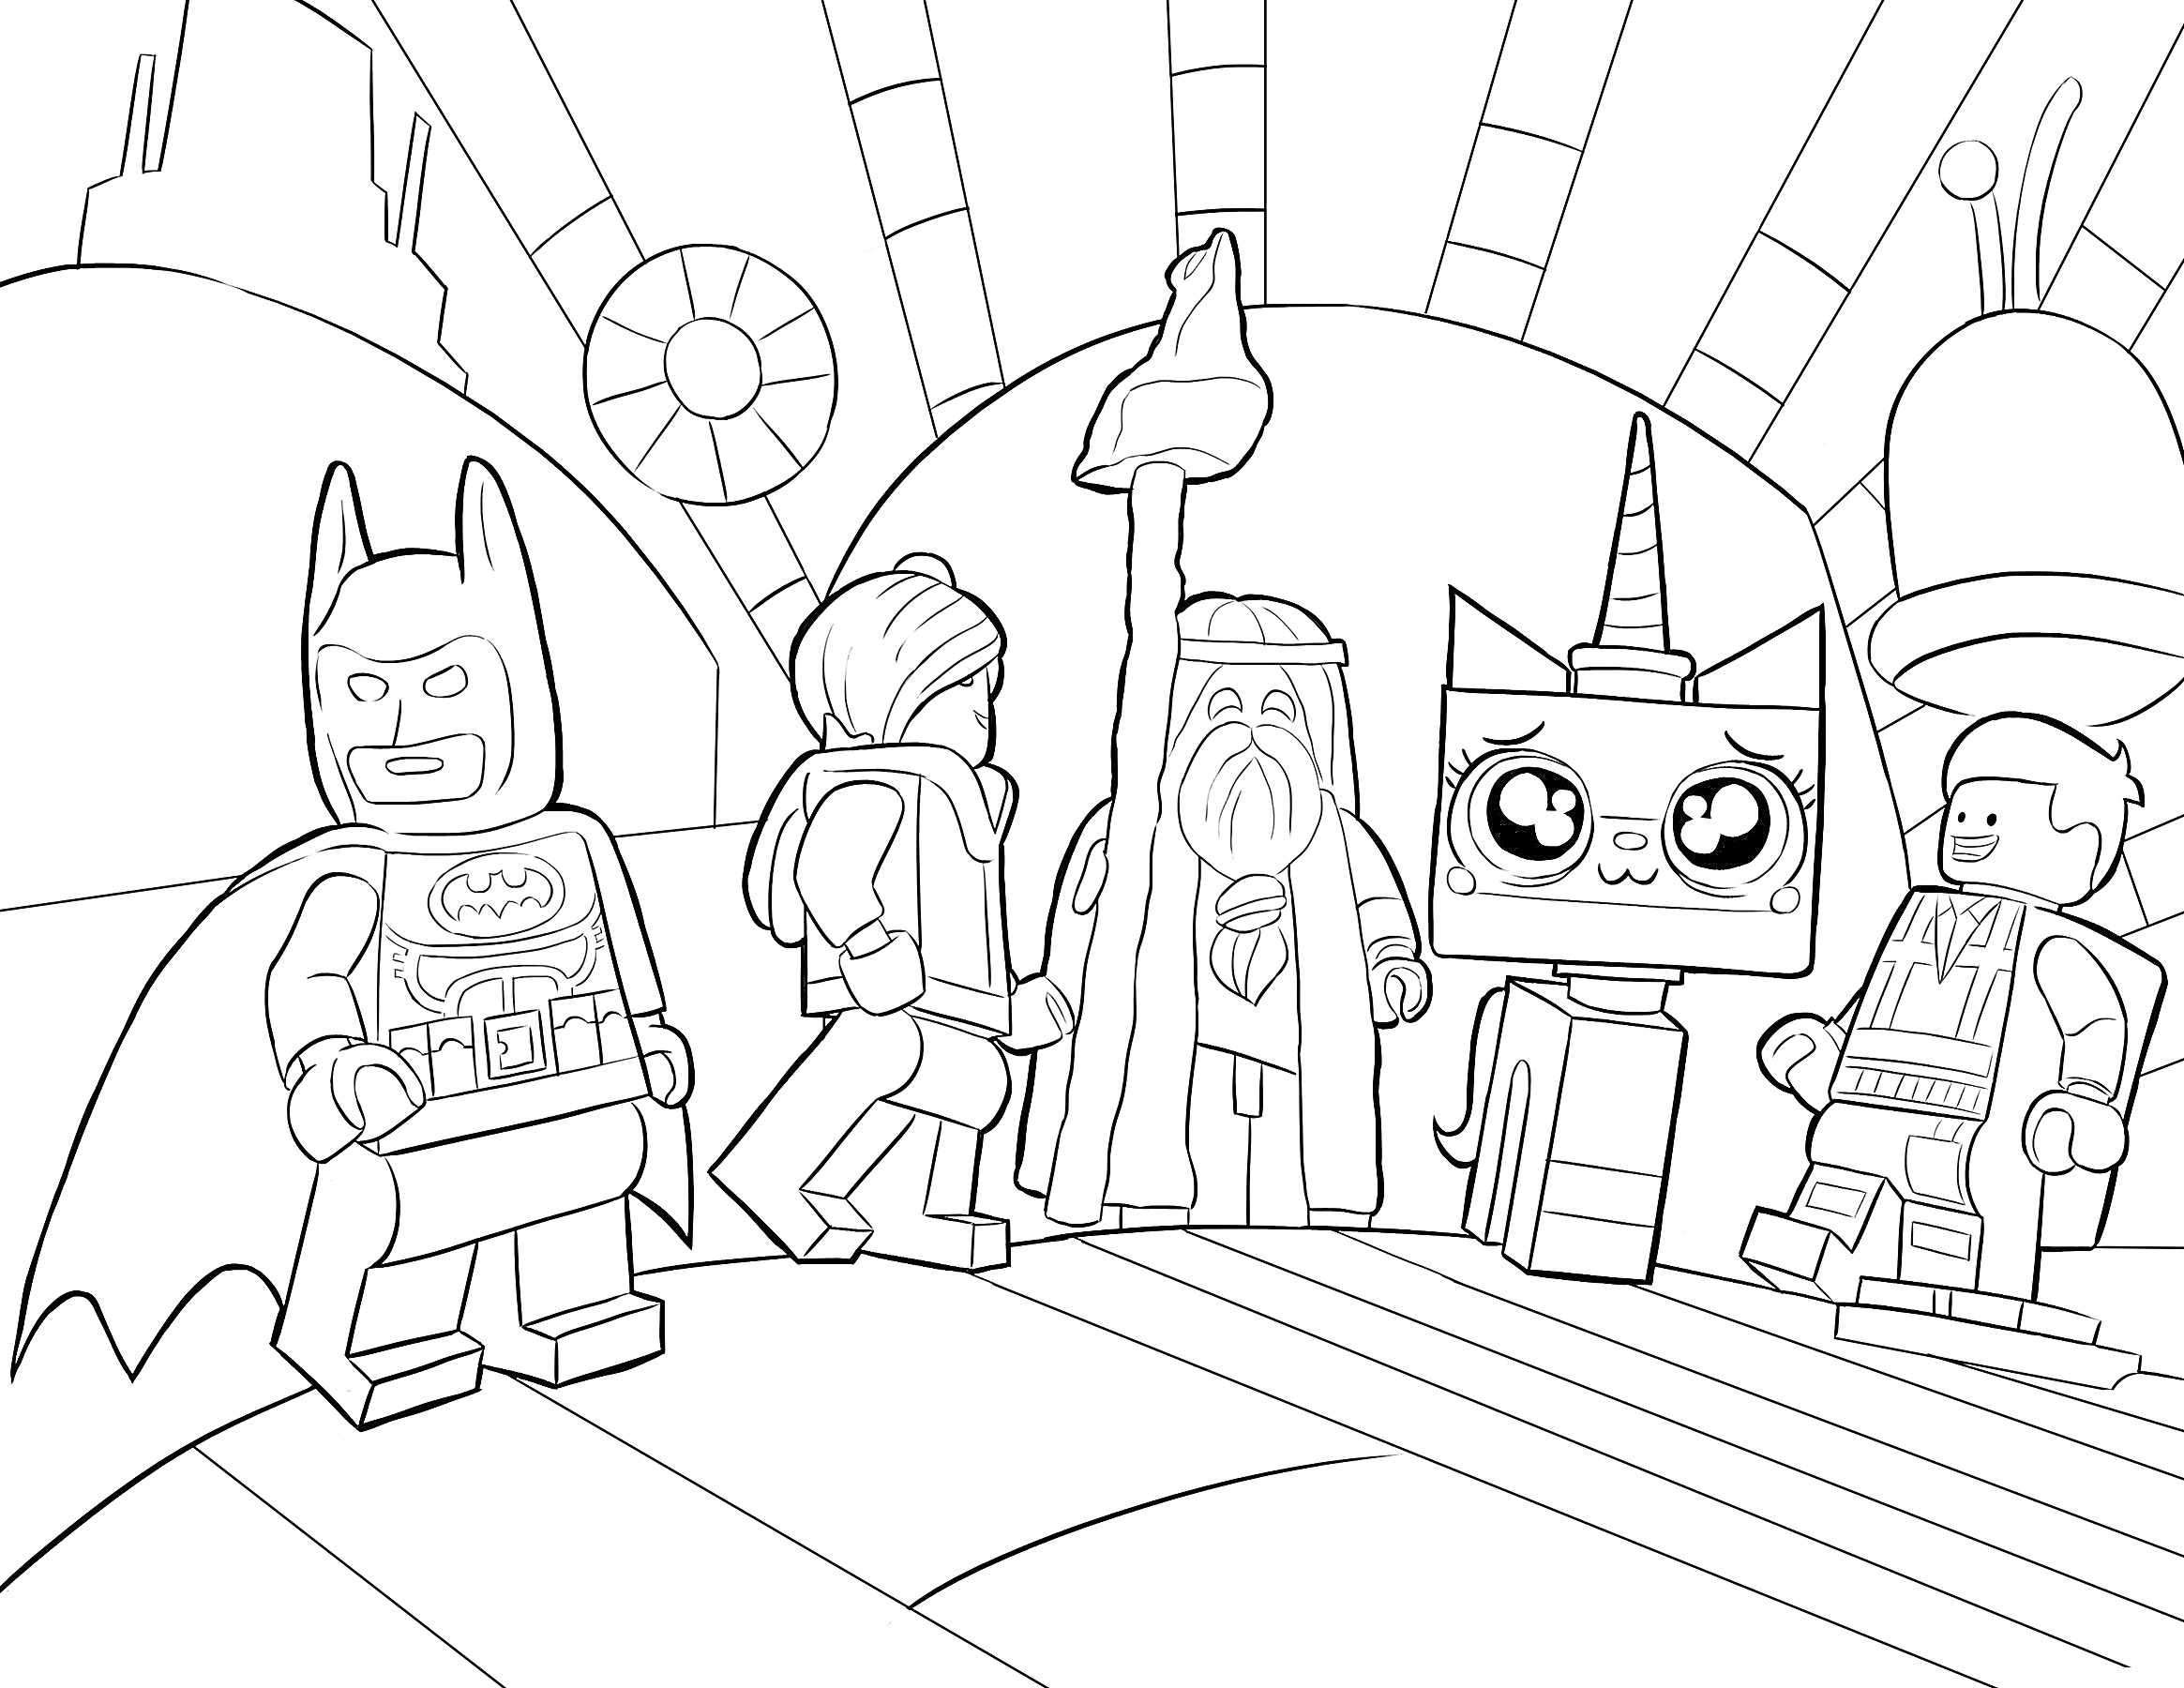 Раскраска Группа Лего персонажей (Бэтмен, Эммет, Витрувий, Единорог)